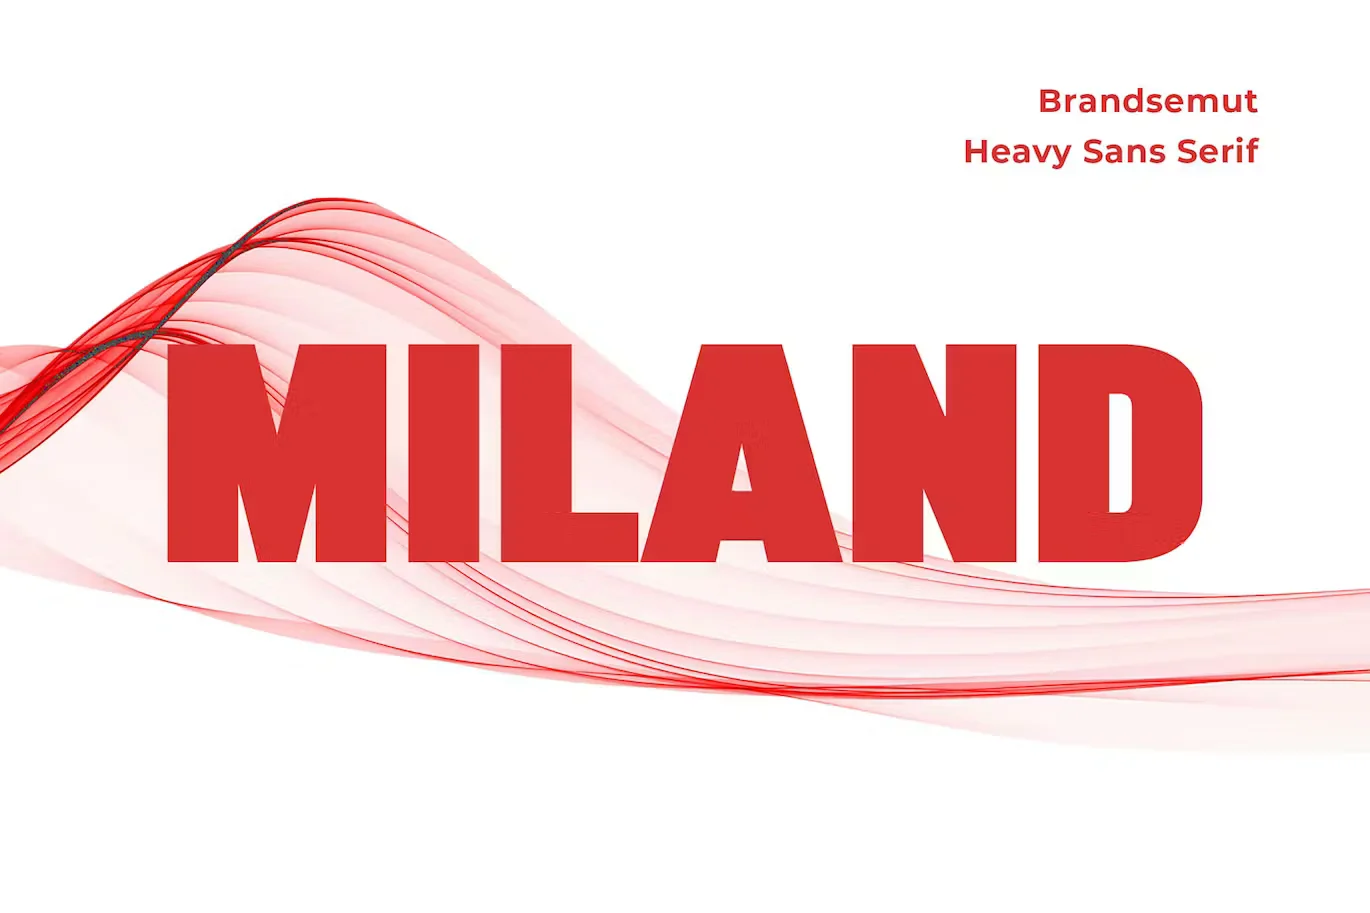 Miland - Heavy Sans Serif